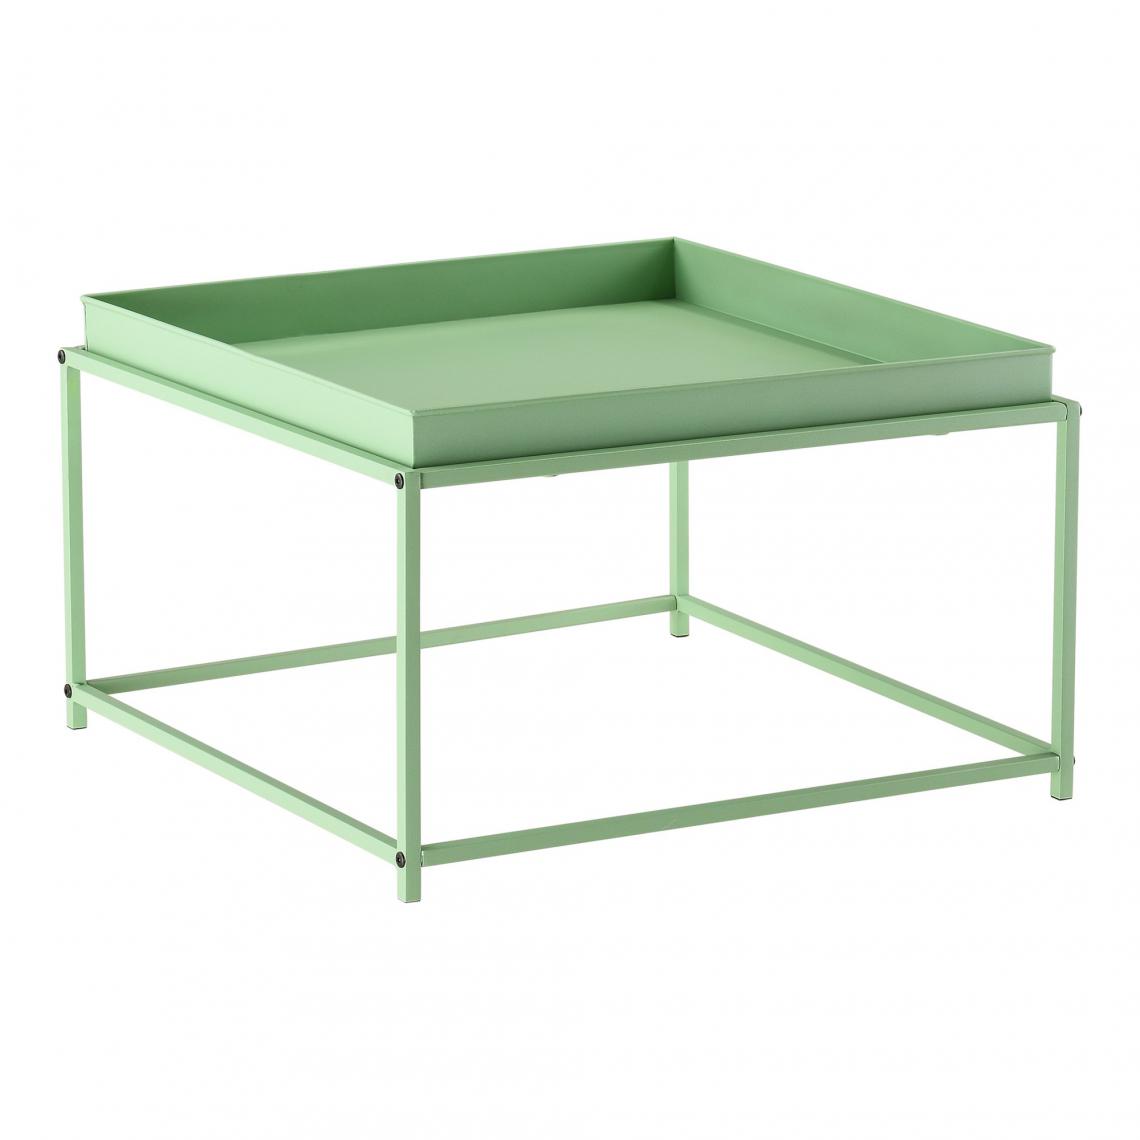 Helloshop26 - Table basse carrée stylée pour salon avec plateau amovible en métal 59 x 59 cm vert 03_0006132 - Tables basses